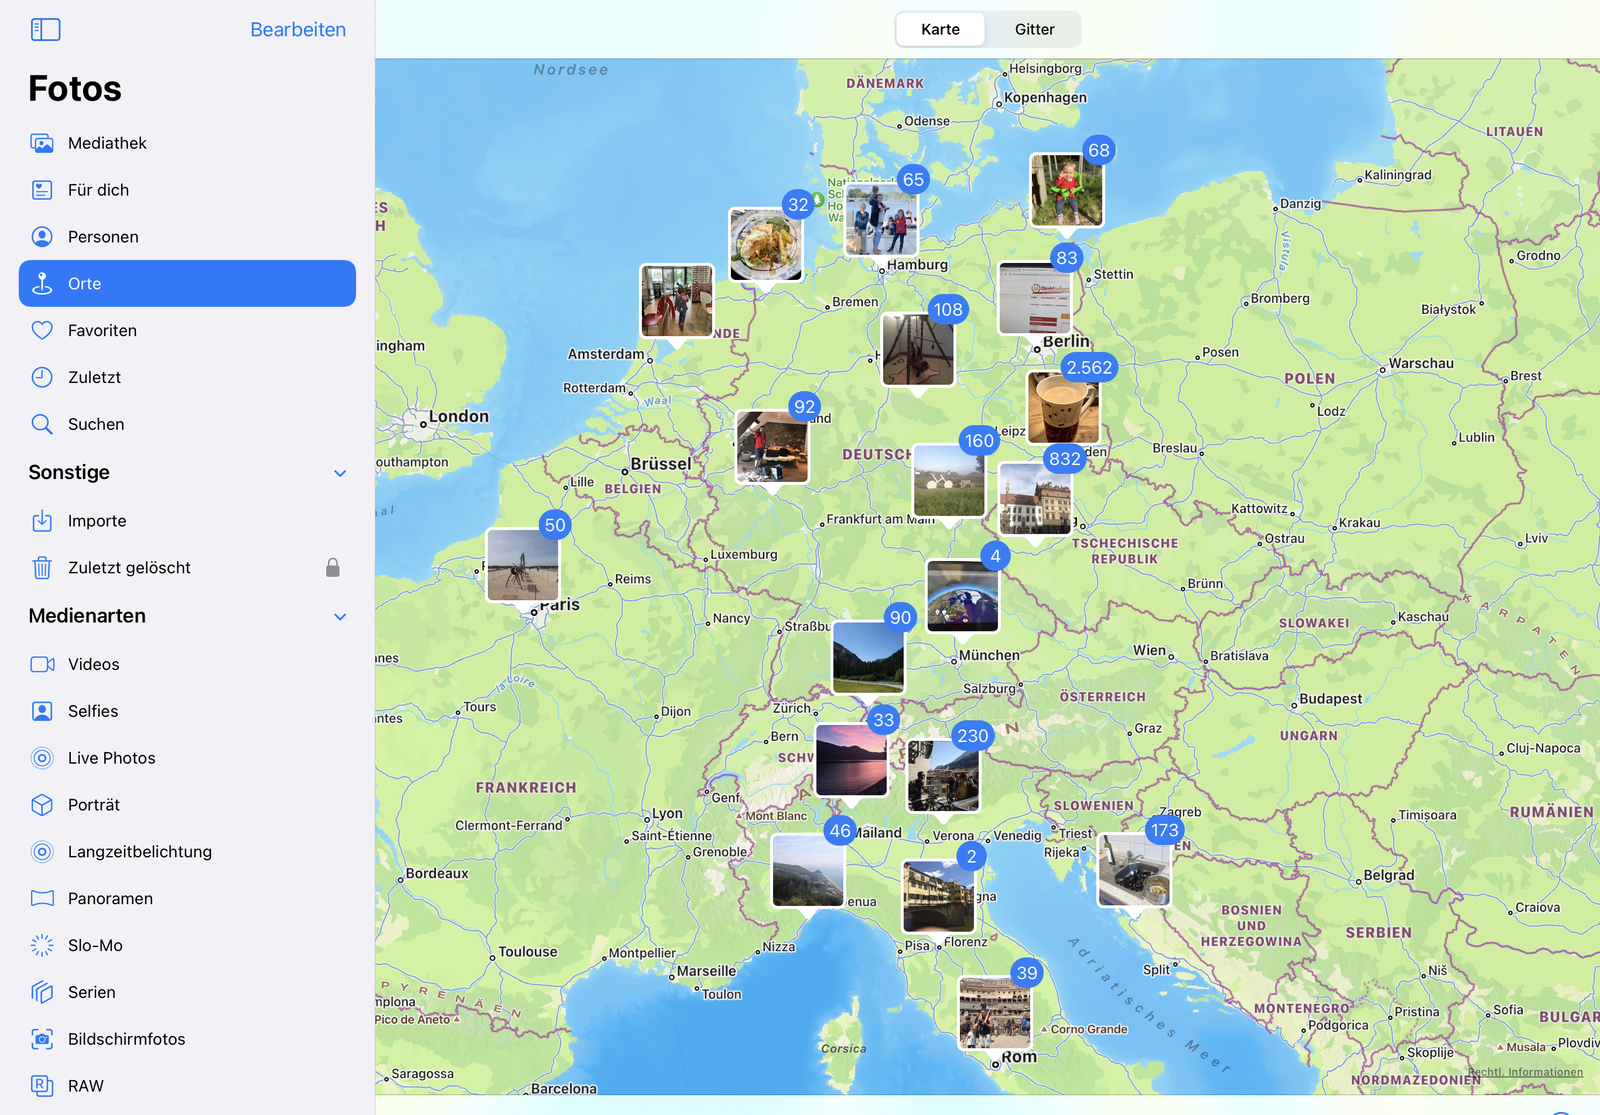 Bildersuche über die Kartenansicht der Fotos-App auf dem iPad